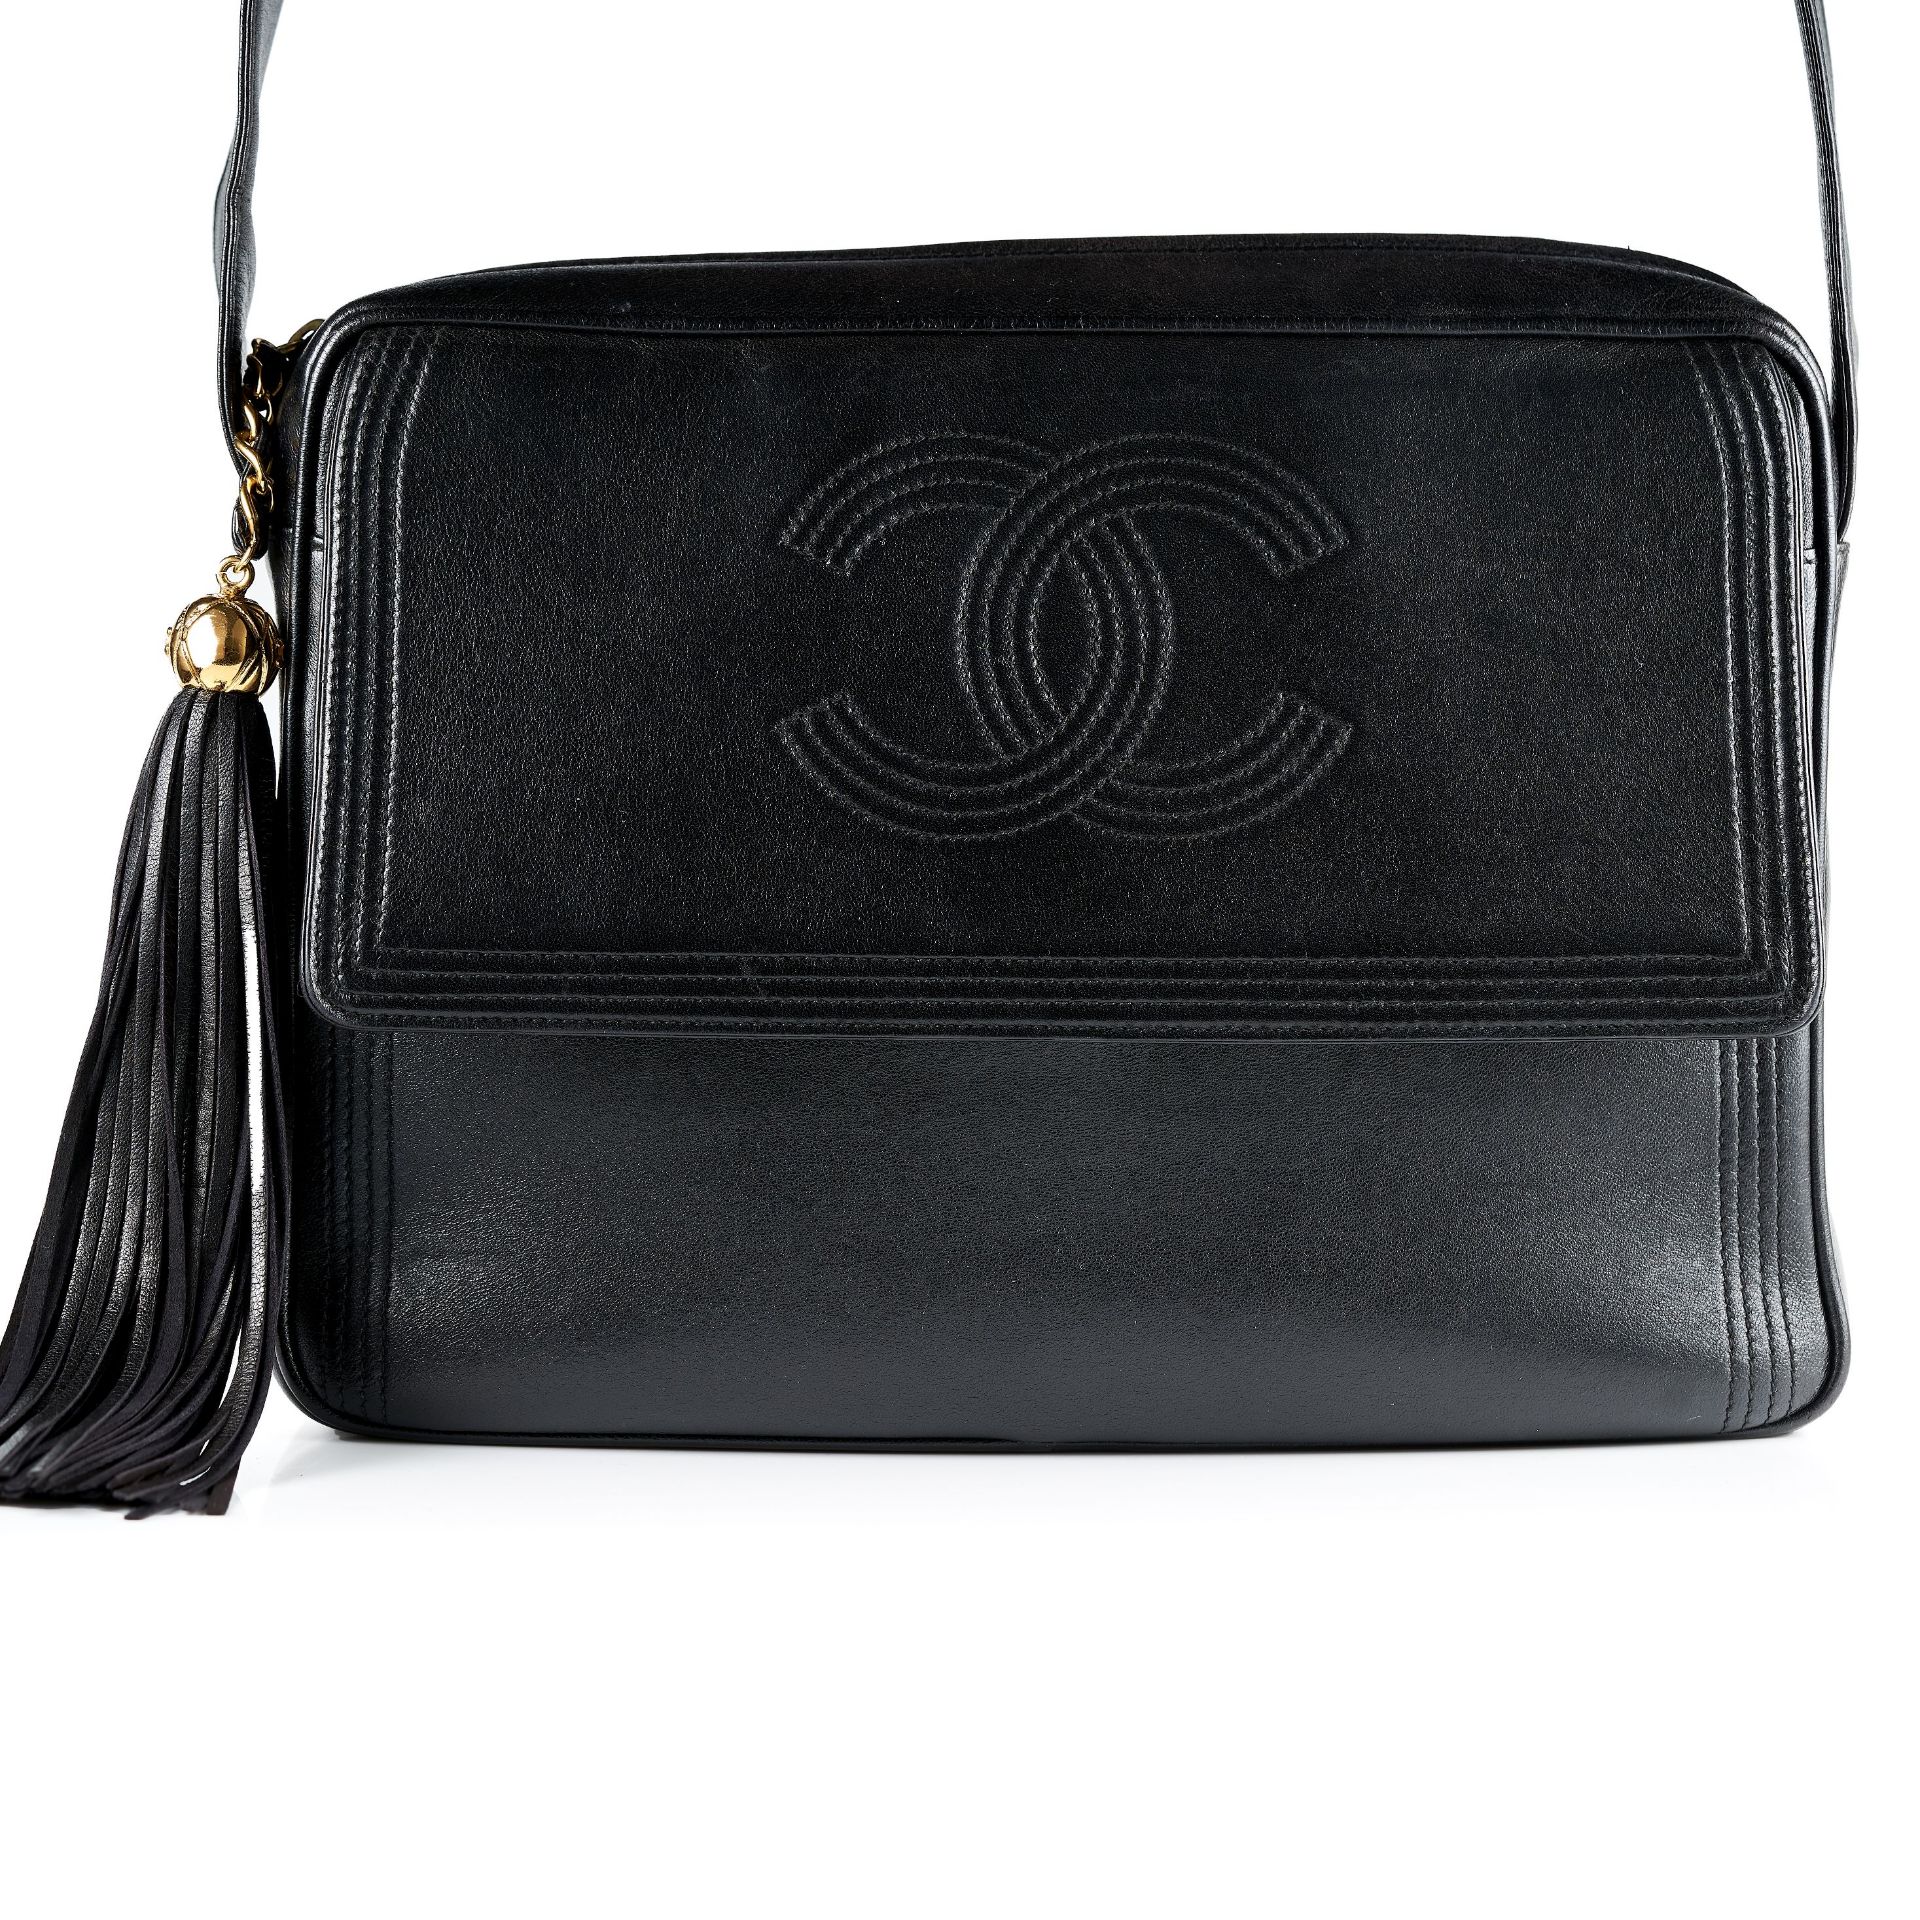 CHANEL, A VINTAGE UNISEX SHOULDER BAG black leather strap, gold tone hardware, later black tassel,